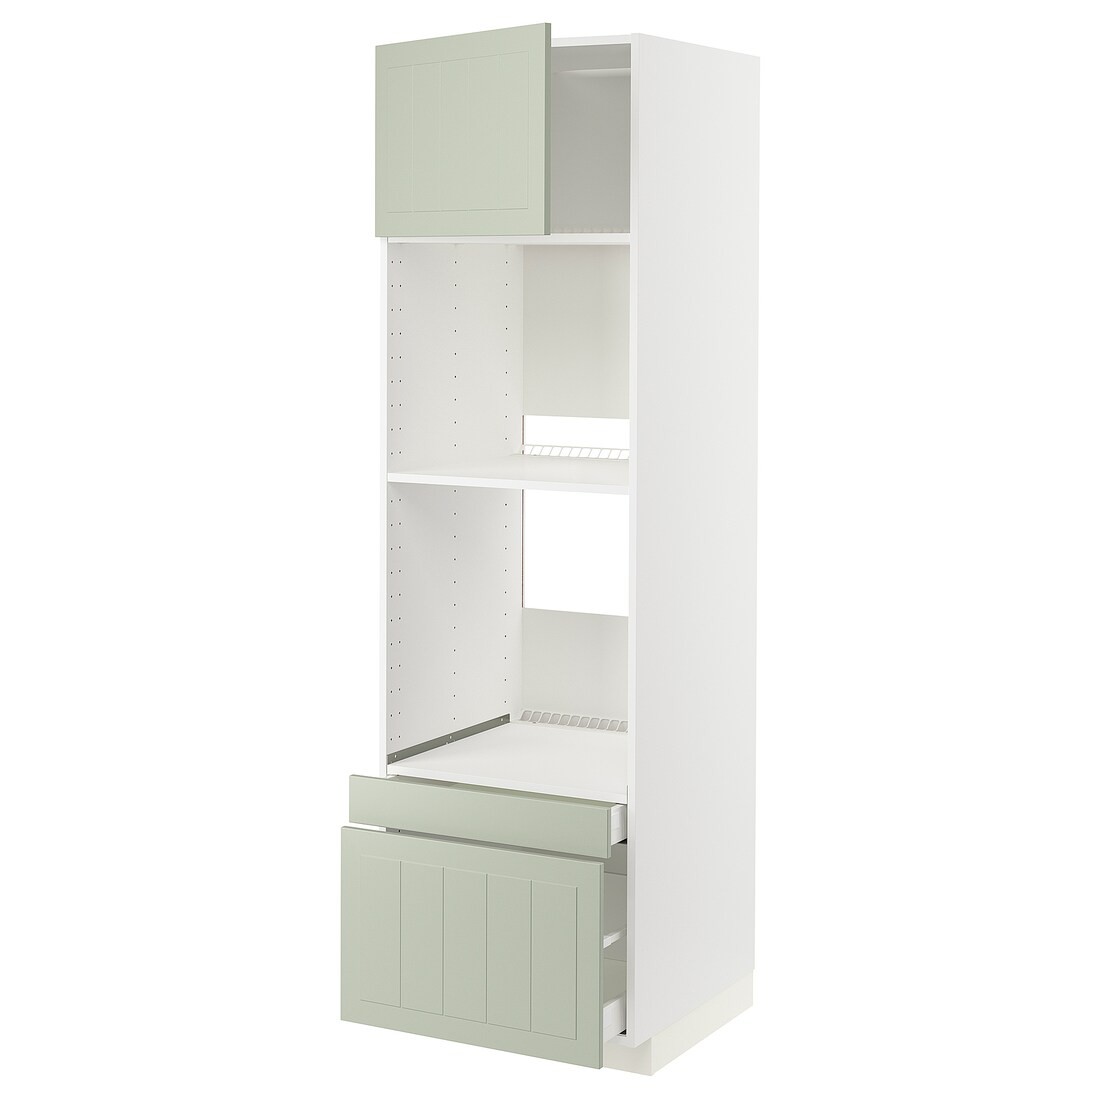 IKEA METOD МЕТОД / MAXIMERA МАКСИМЕРА Высокий шкаф для духовки комби с дверцей / ящиками, белый / Stensund светло-зеленый, 60x60x200 см 69486179 | 694.861.79